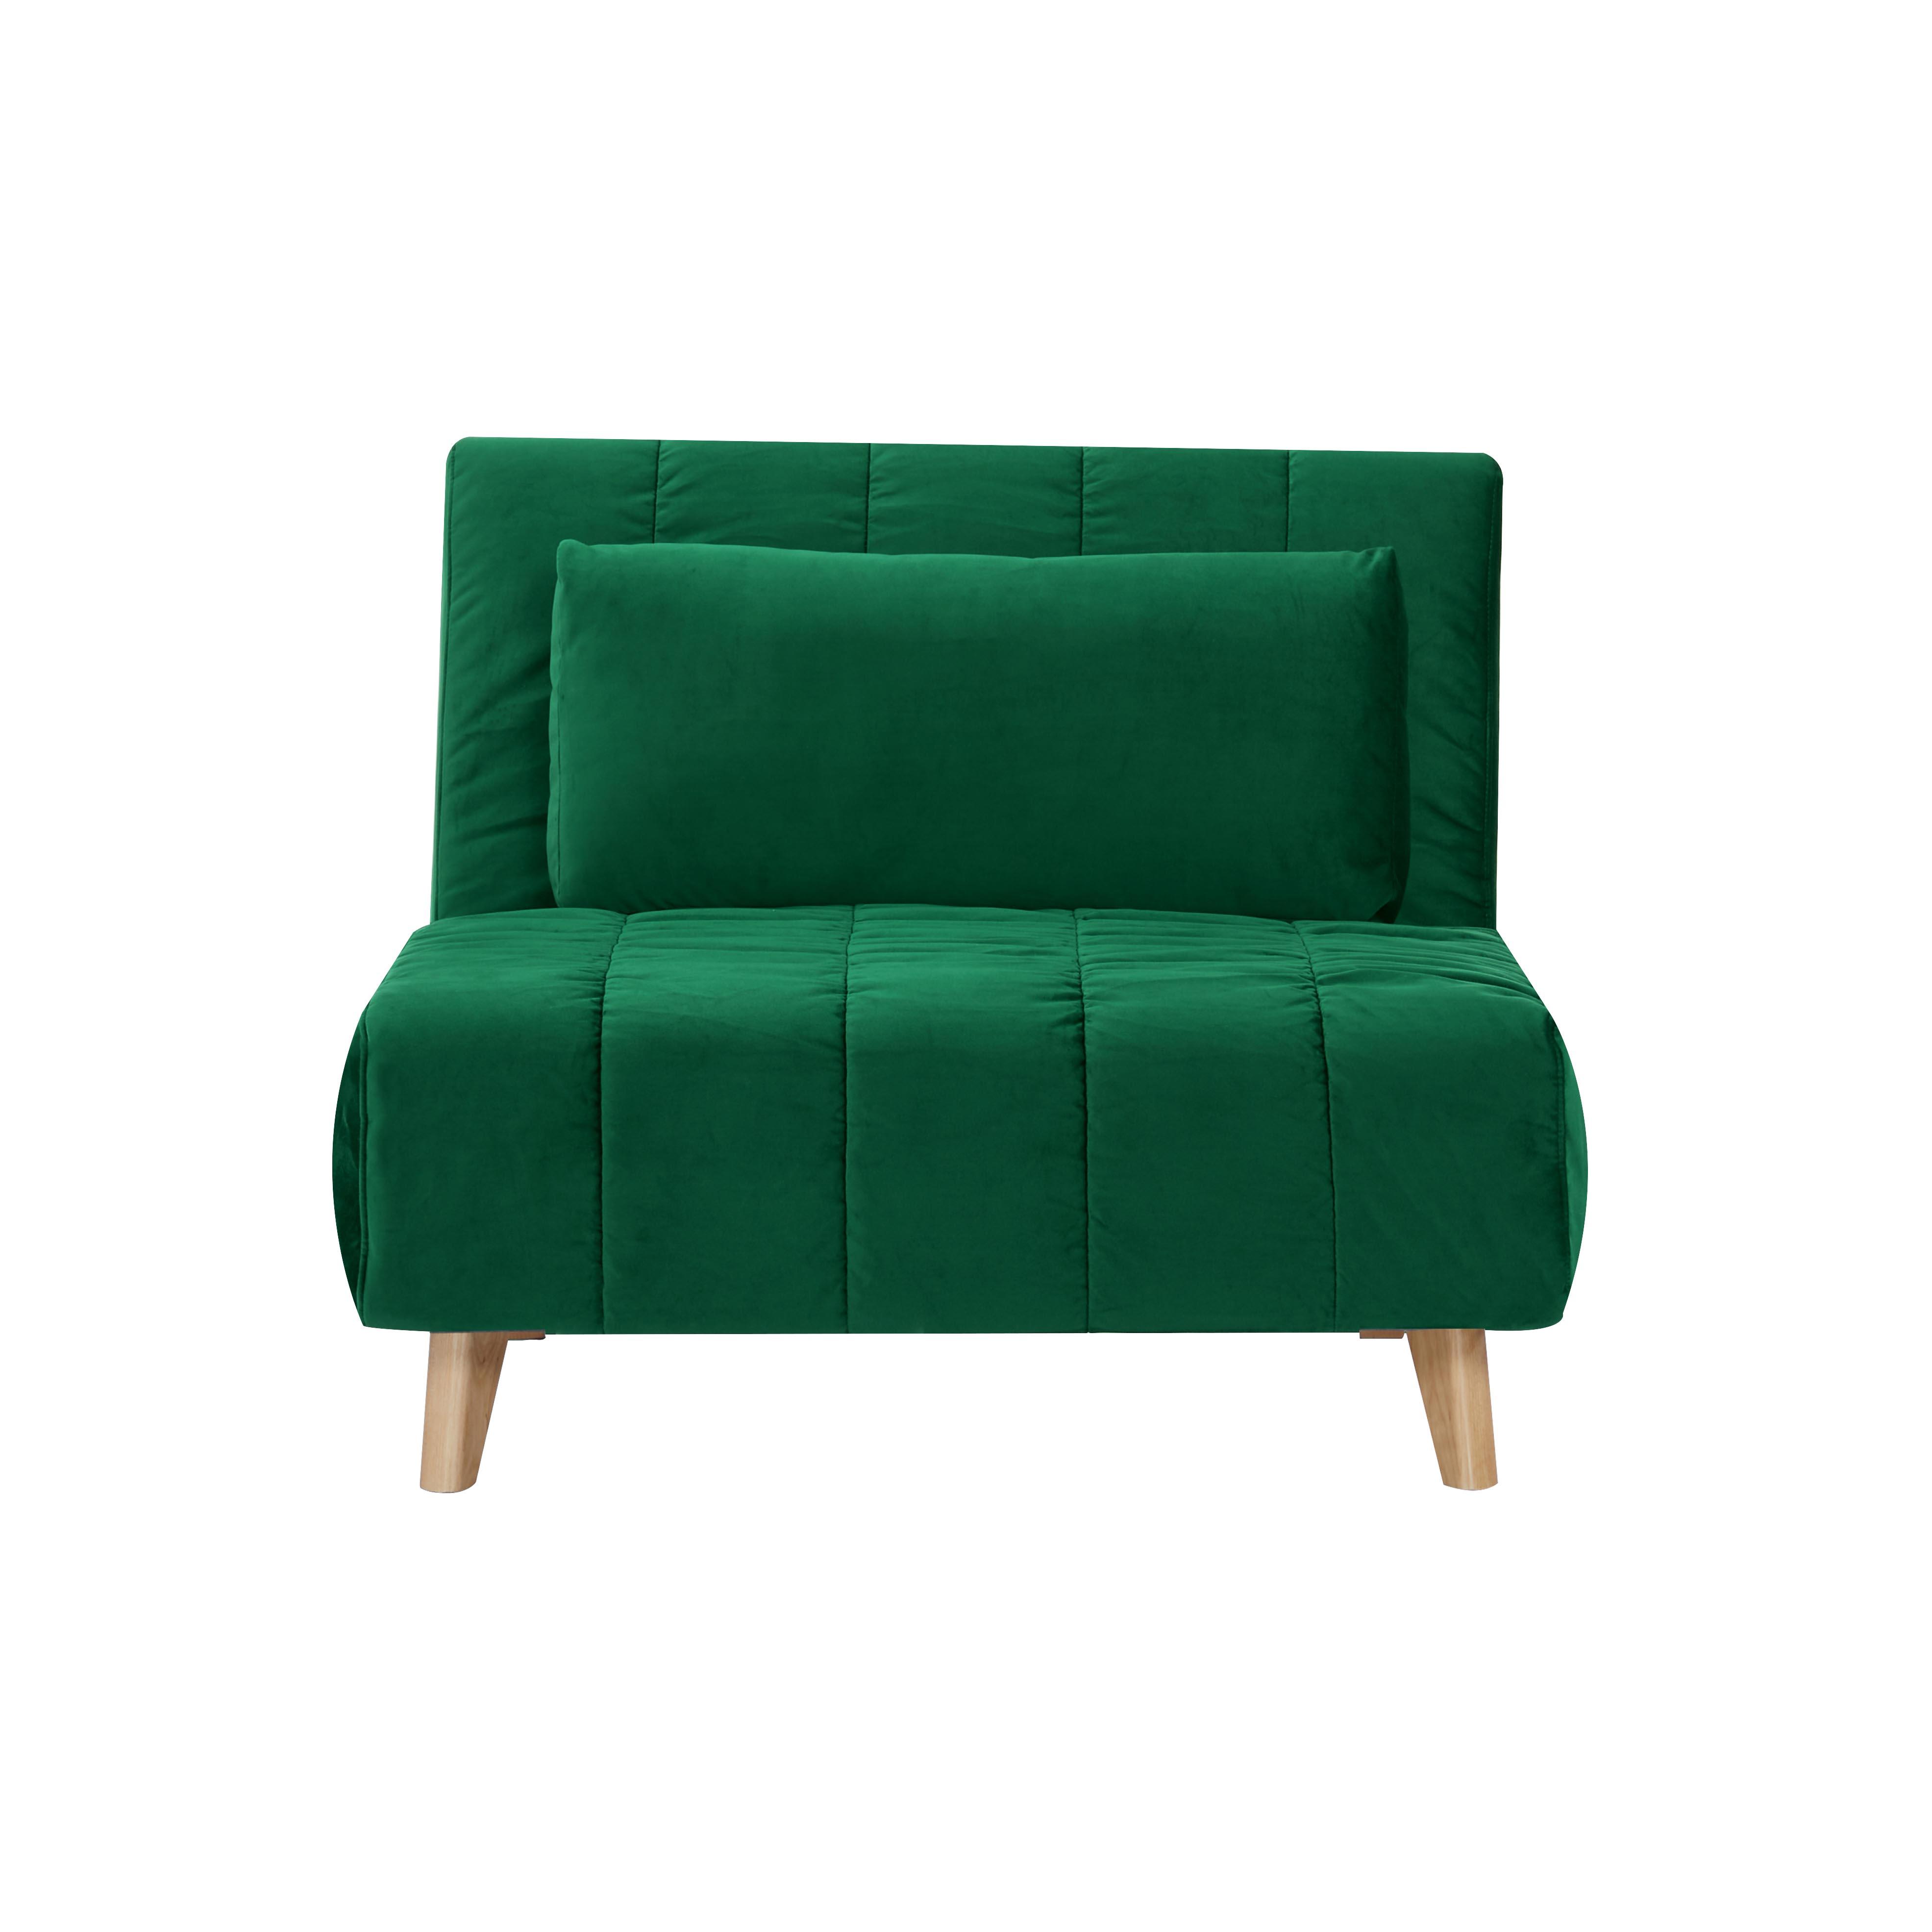 Rozkládací Křeslo Levin - Zelené - zelená, Moderní, dřevo/textil (103/94/82cm) - P & B